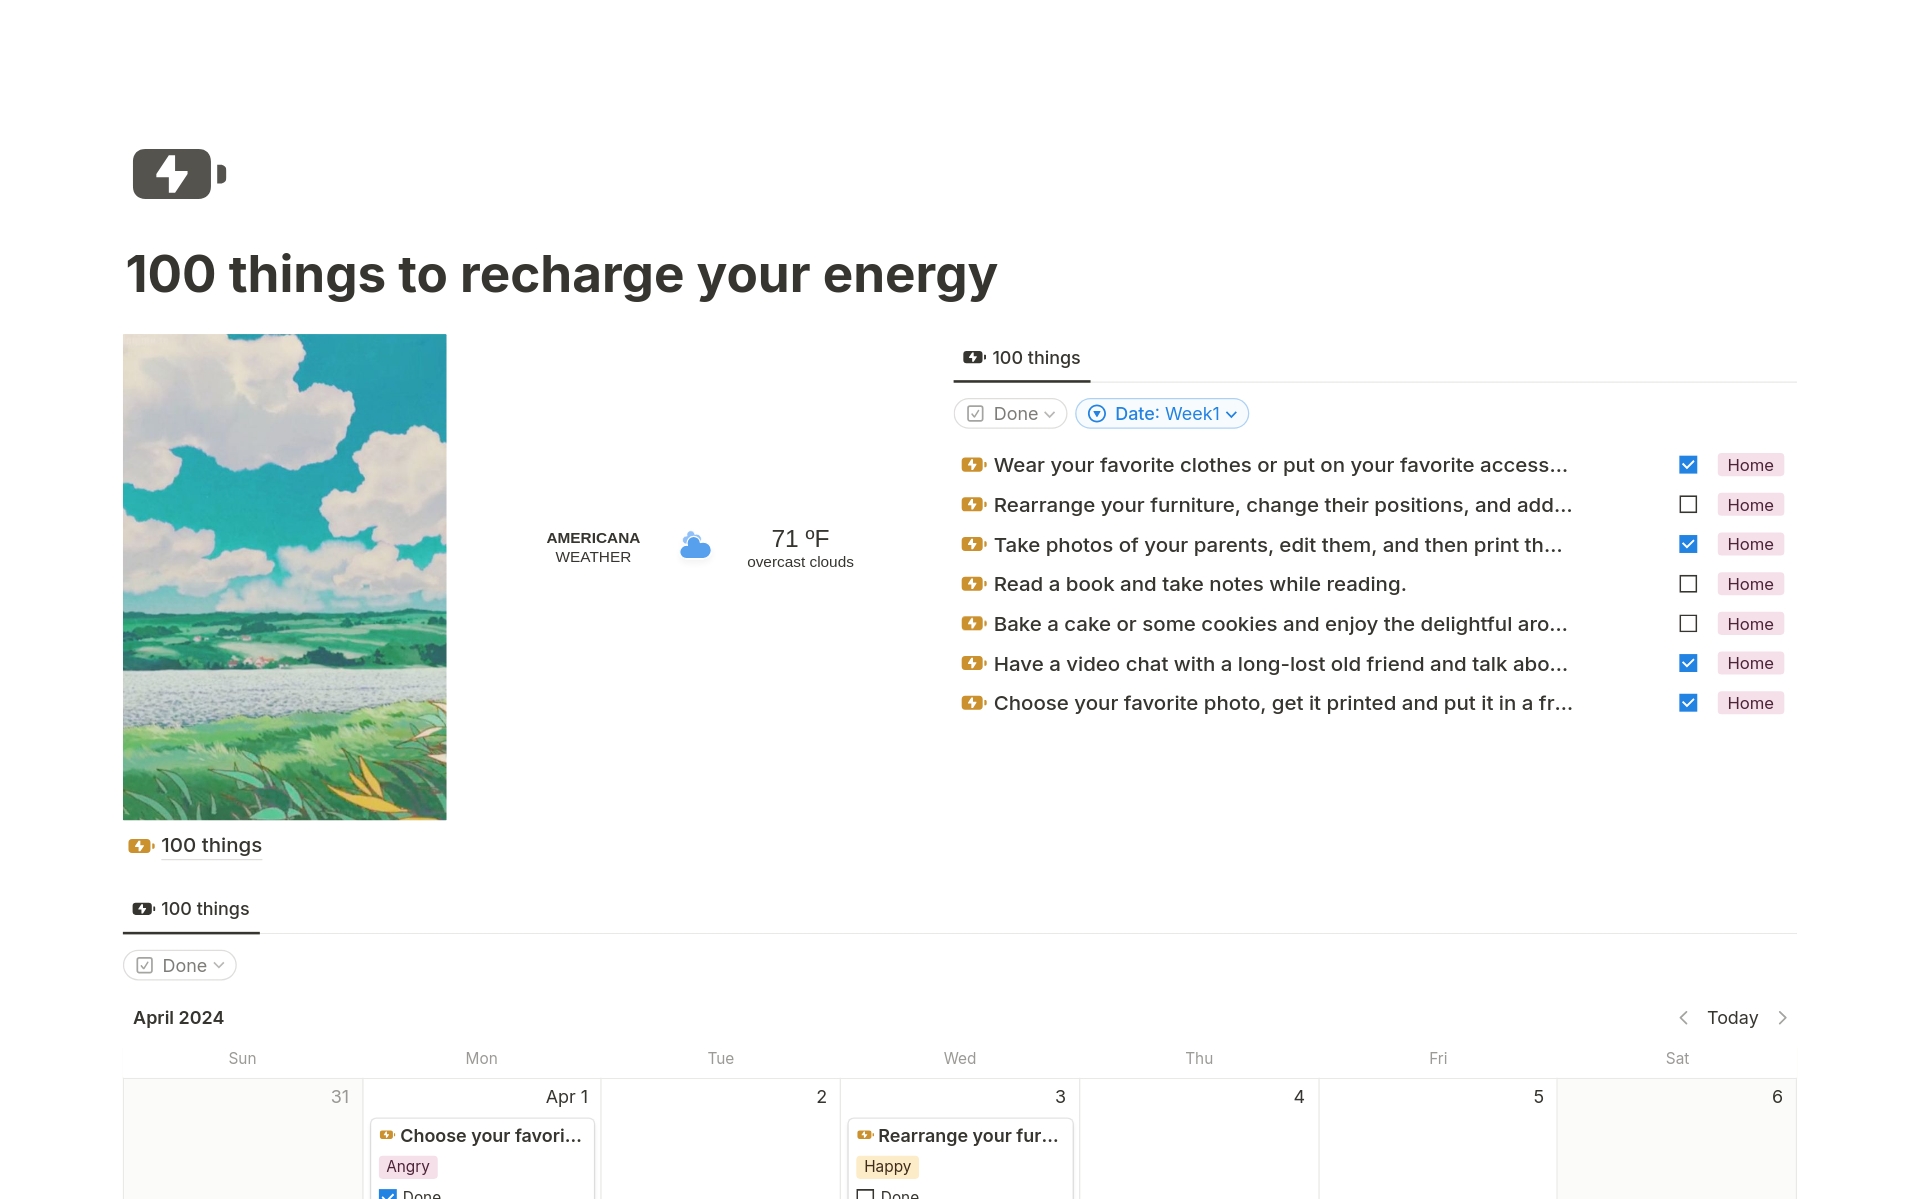 En förhandsgranskning av mallen för 100 things to recharge your energy